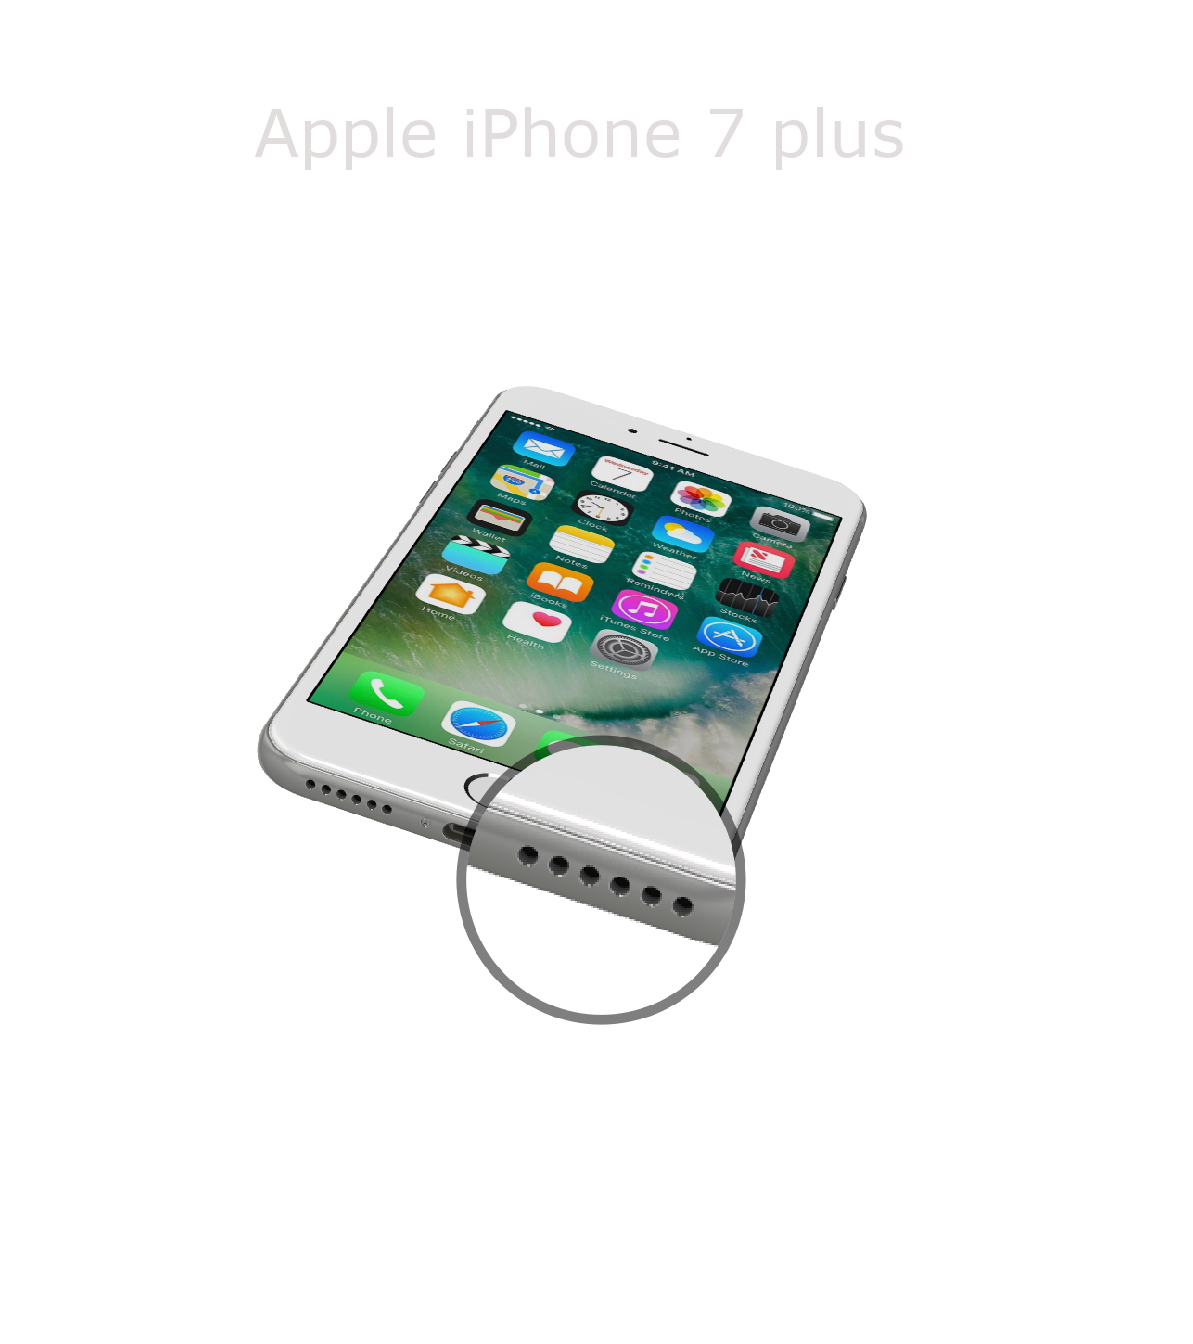 Laga högtalare iPhone 7 plus